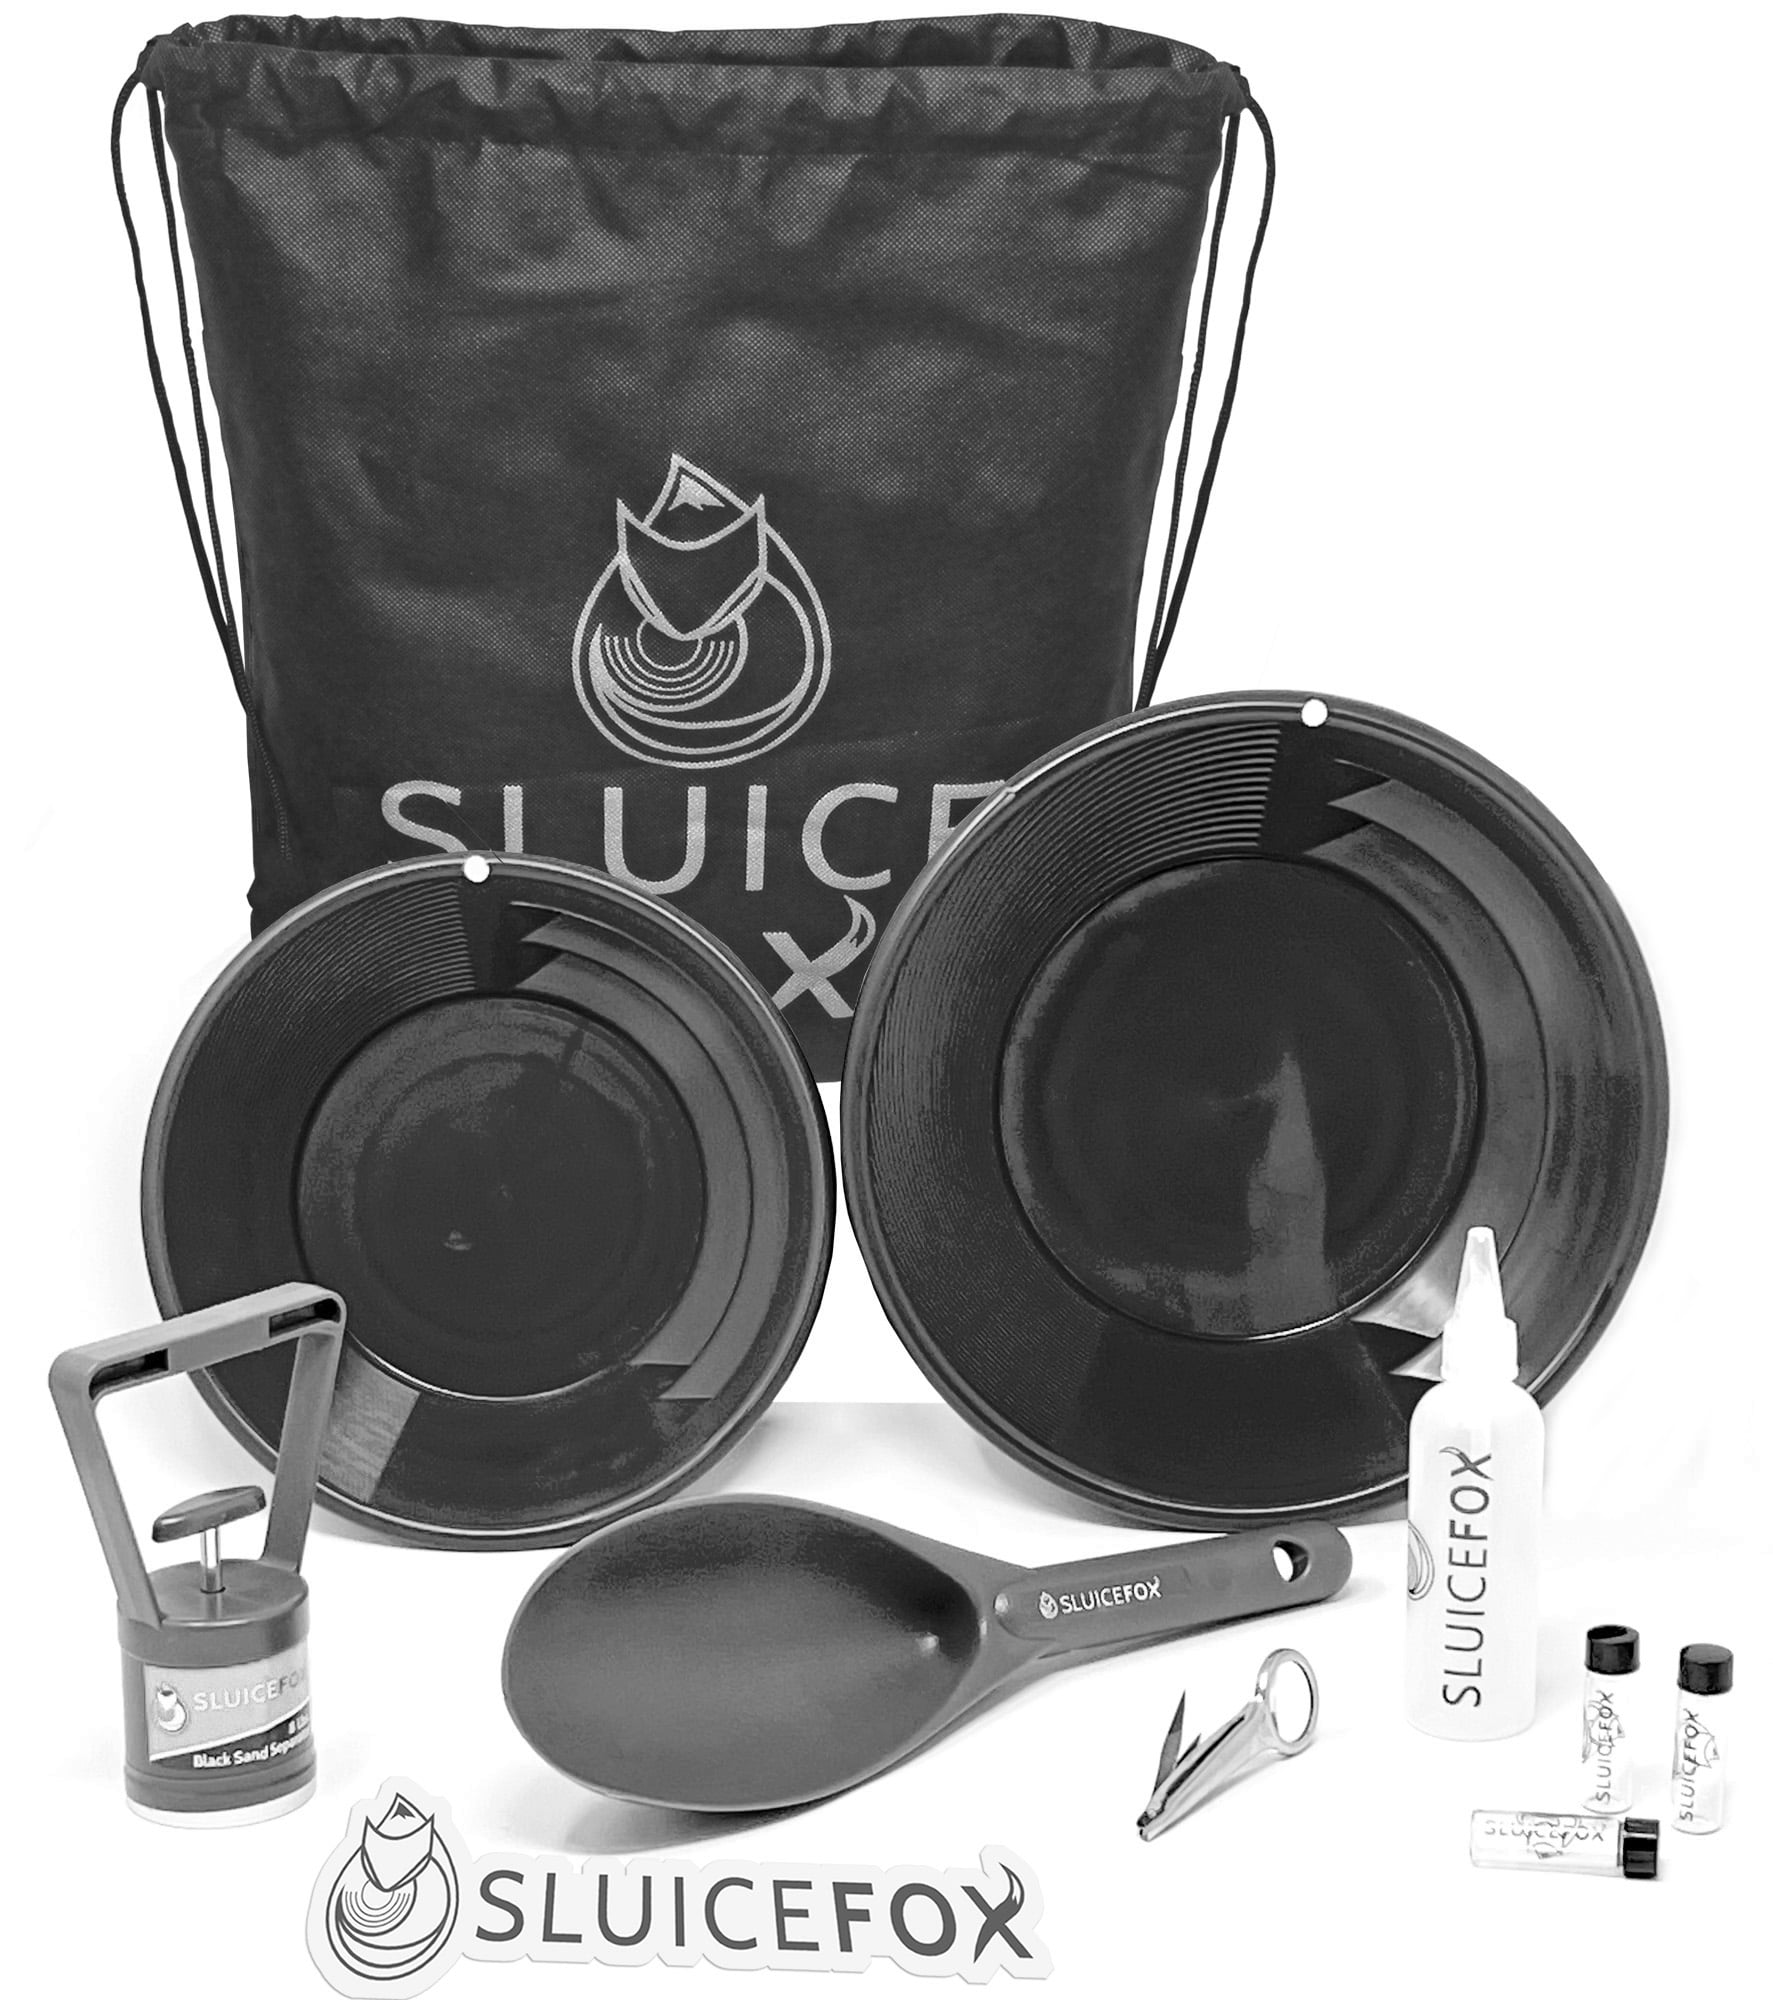 Sluice Fox 7 Piece Gold Panning Kit Classifier, Gold Pans, Vials, Sniffer Bottle, Tweezers, Adult Unisex, Size: One Size